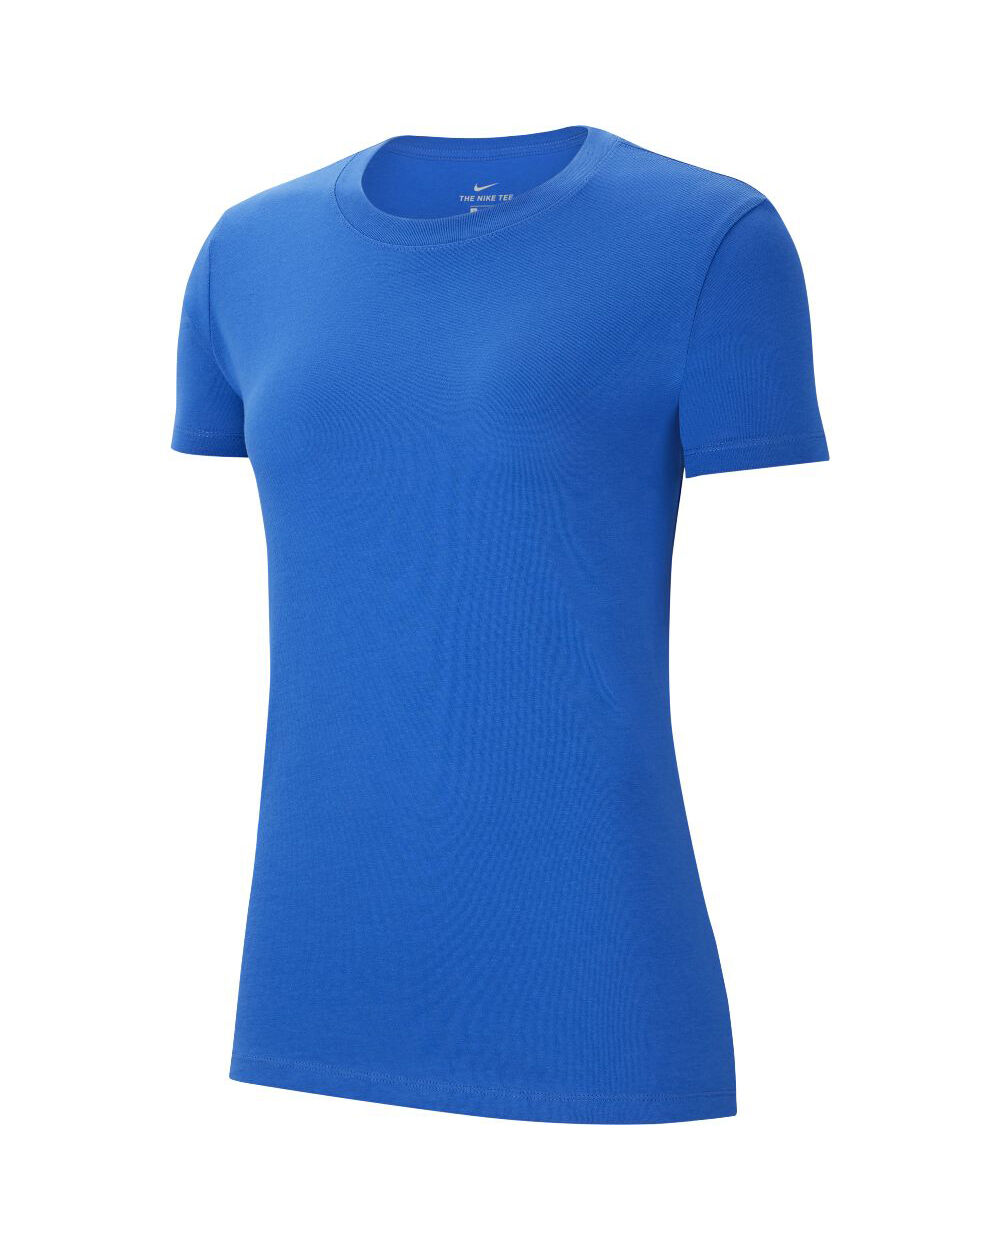 Camiseta Nike Team Club 20 Azul Real para Mujeres - CZ0903-463